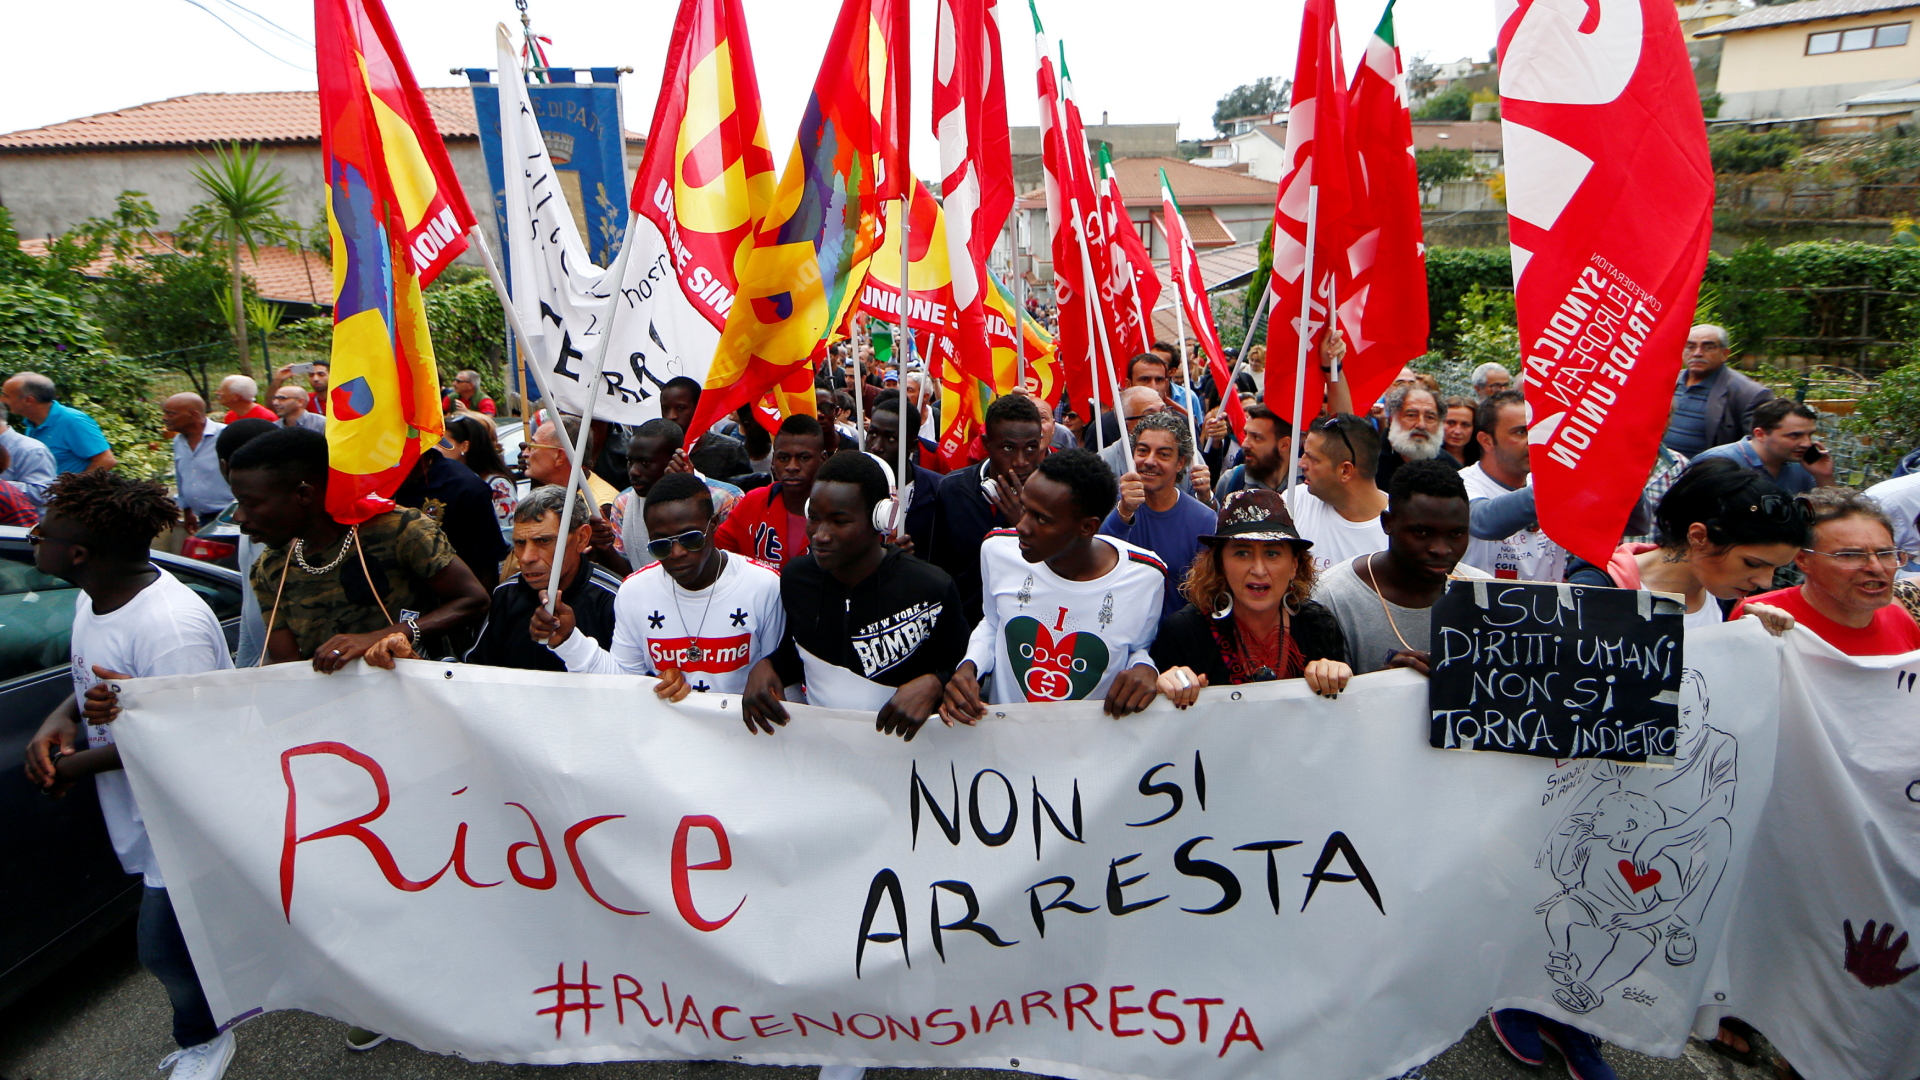 Menschen demonstrieren in Riace für "ihren" Bürgermeister (Foto vom 6. Oktober) | Bildquelle: REUTERS